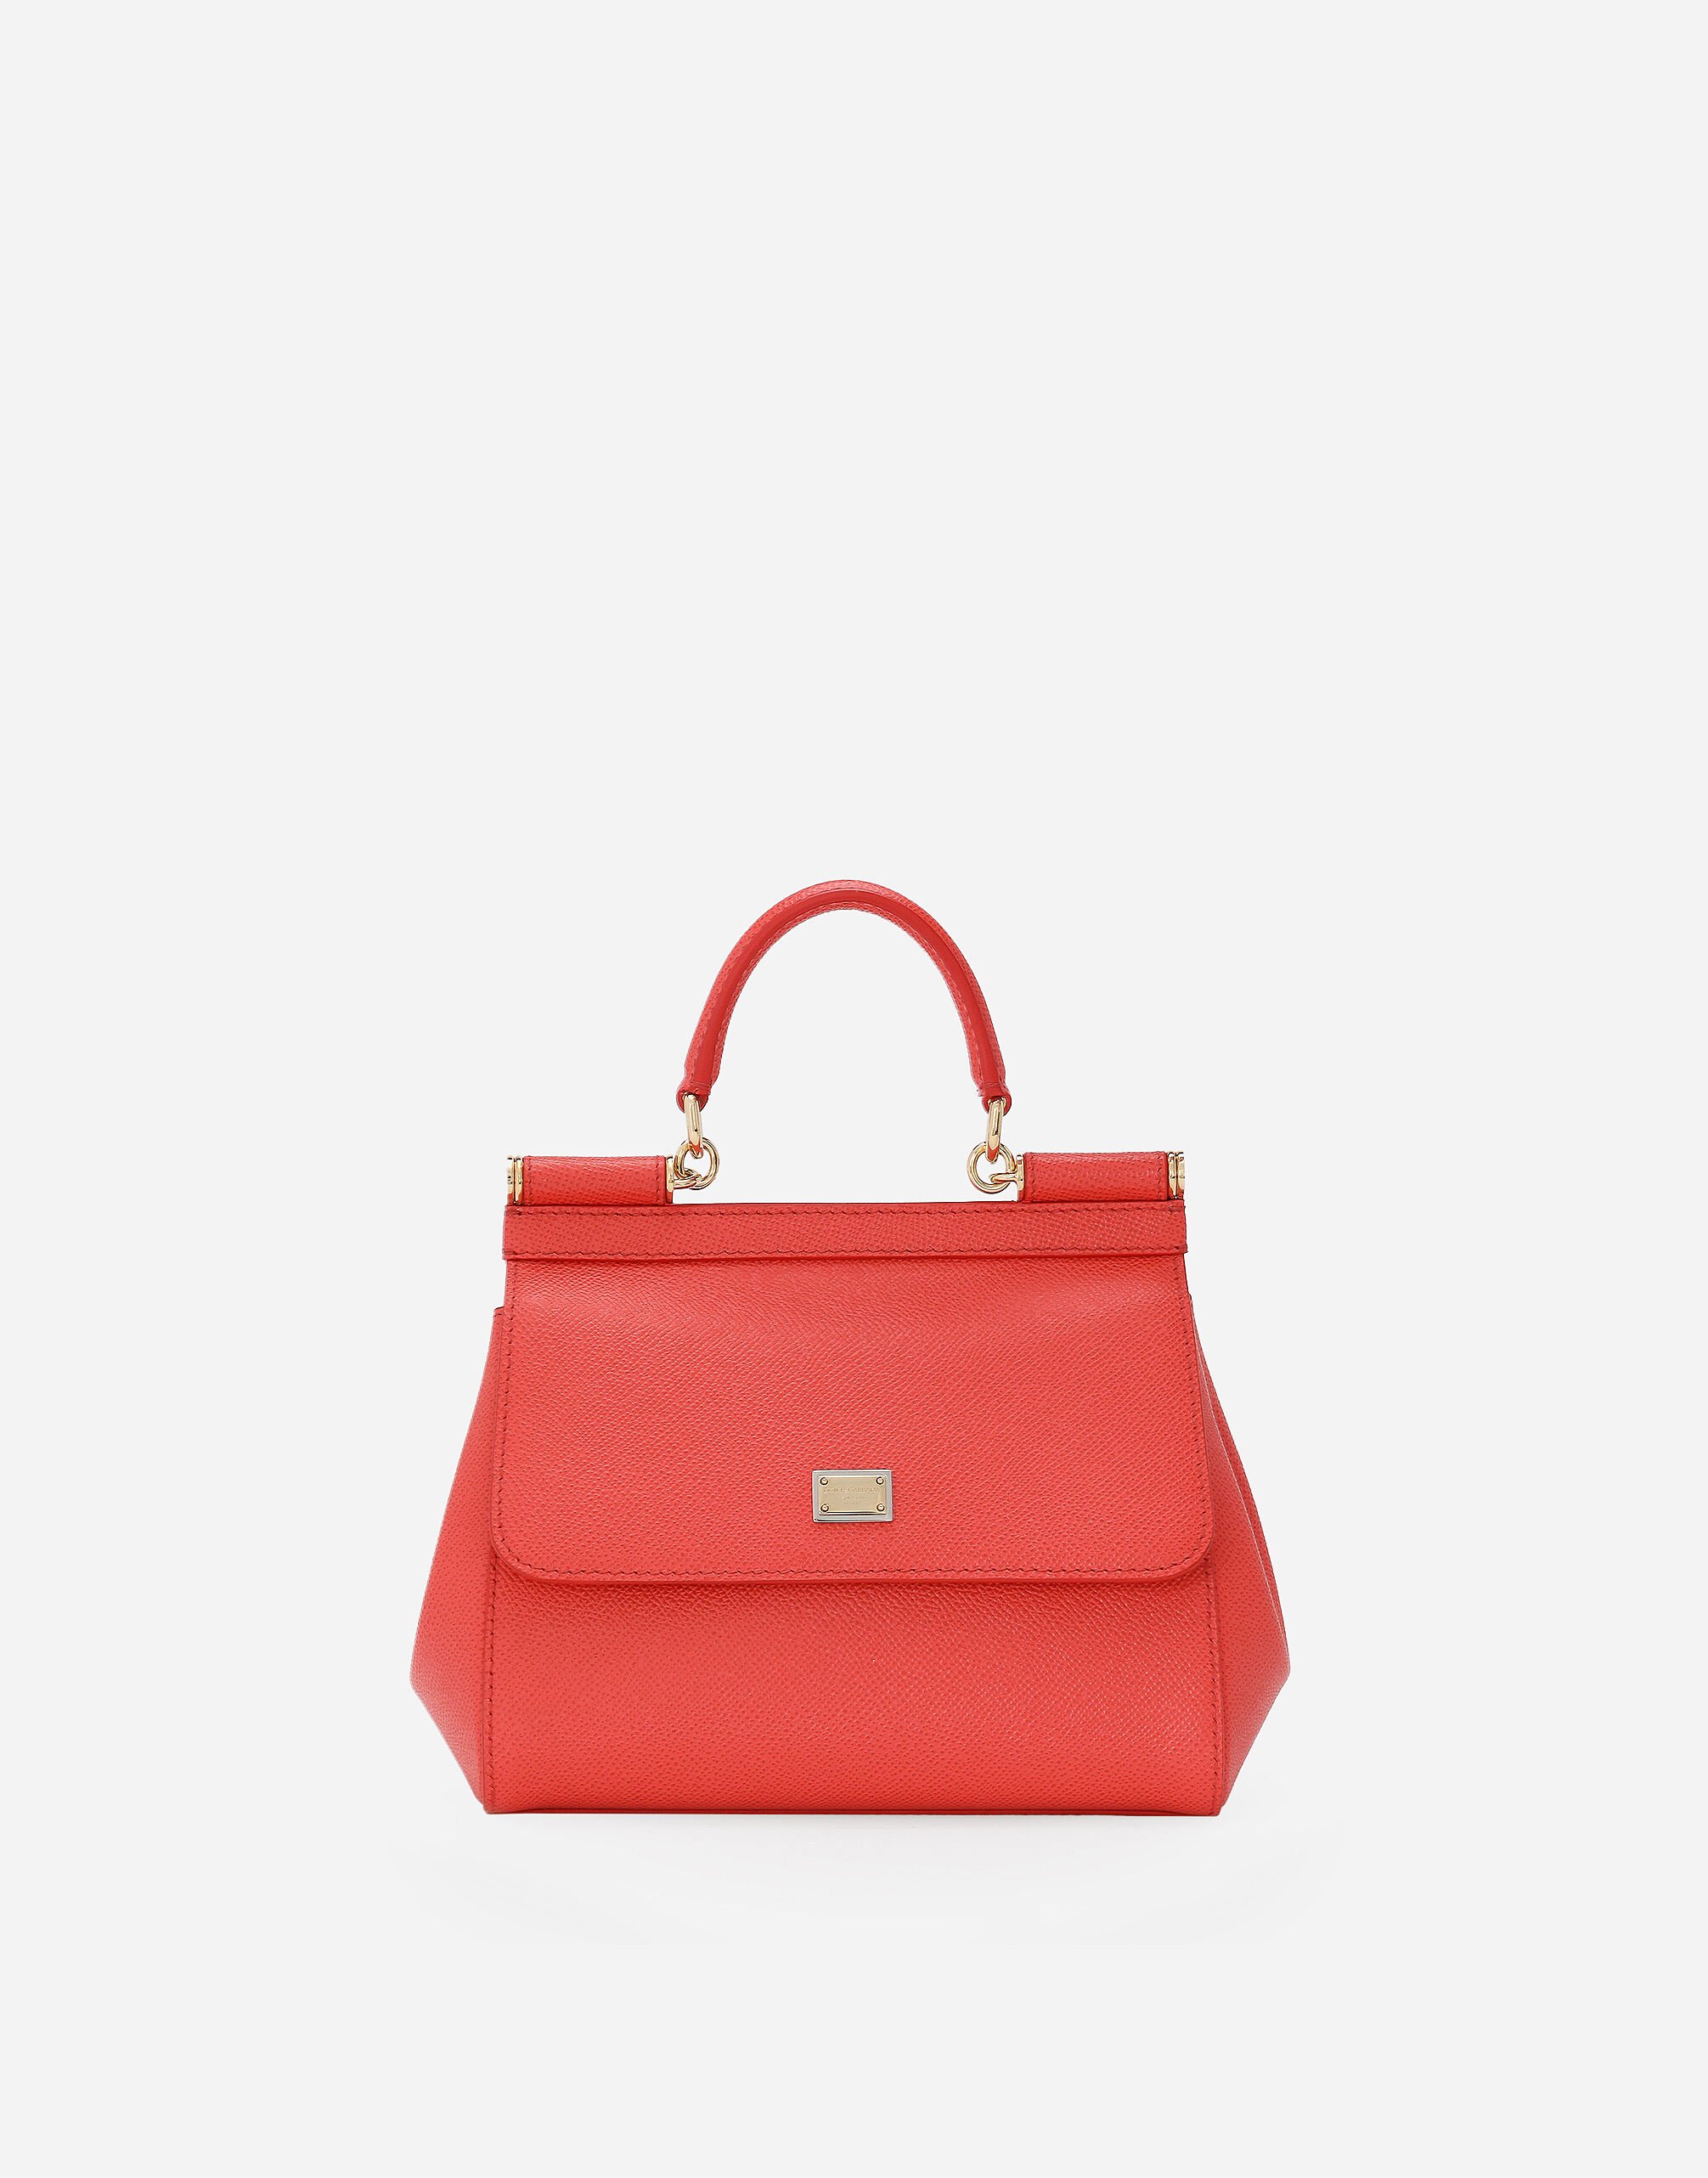 Dolce & Gabbana Medium Sicily handbag Beige BB6002AV888